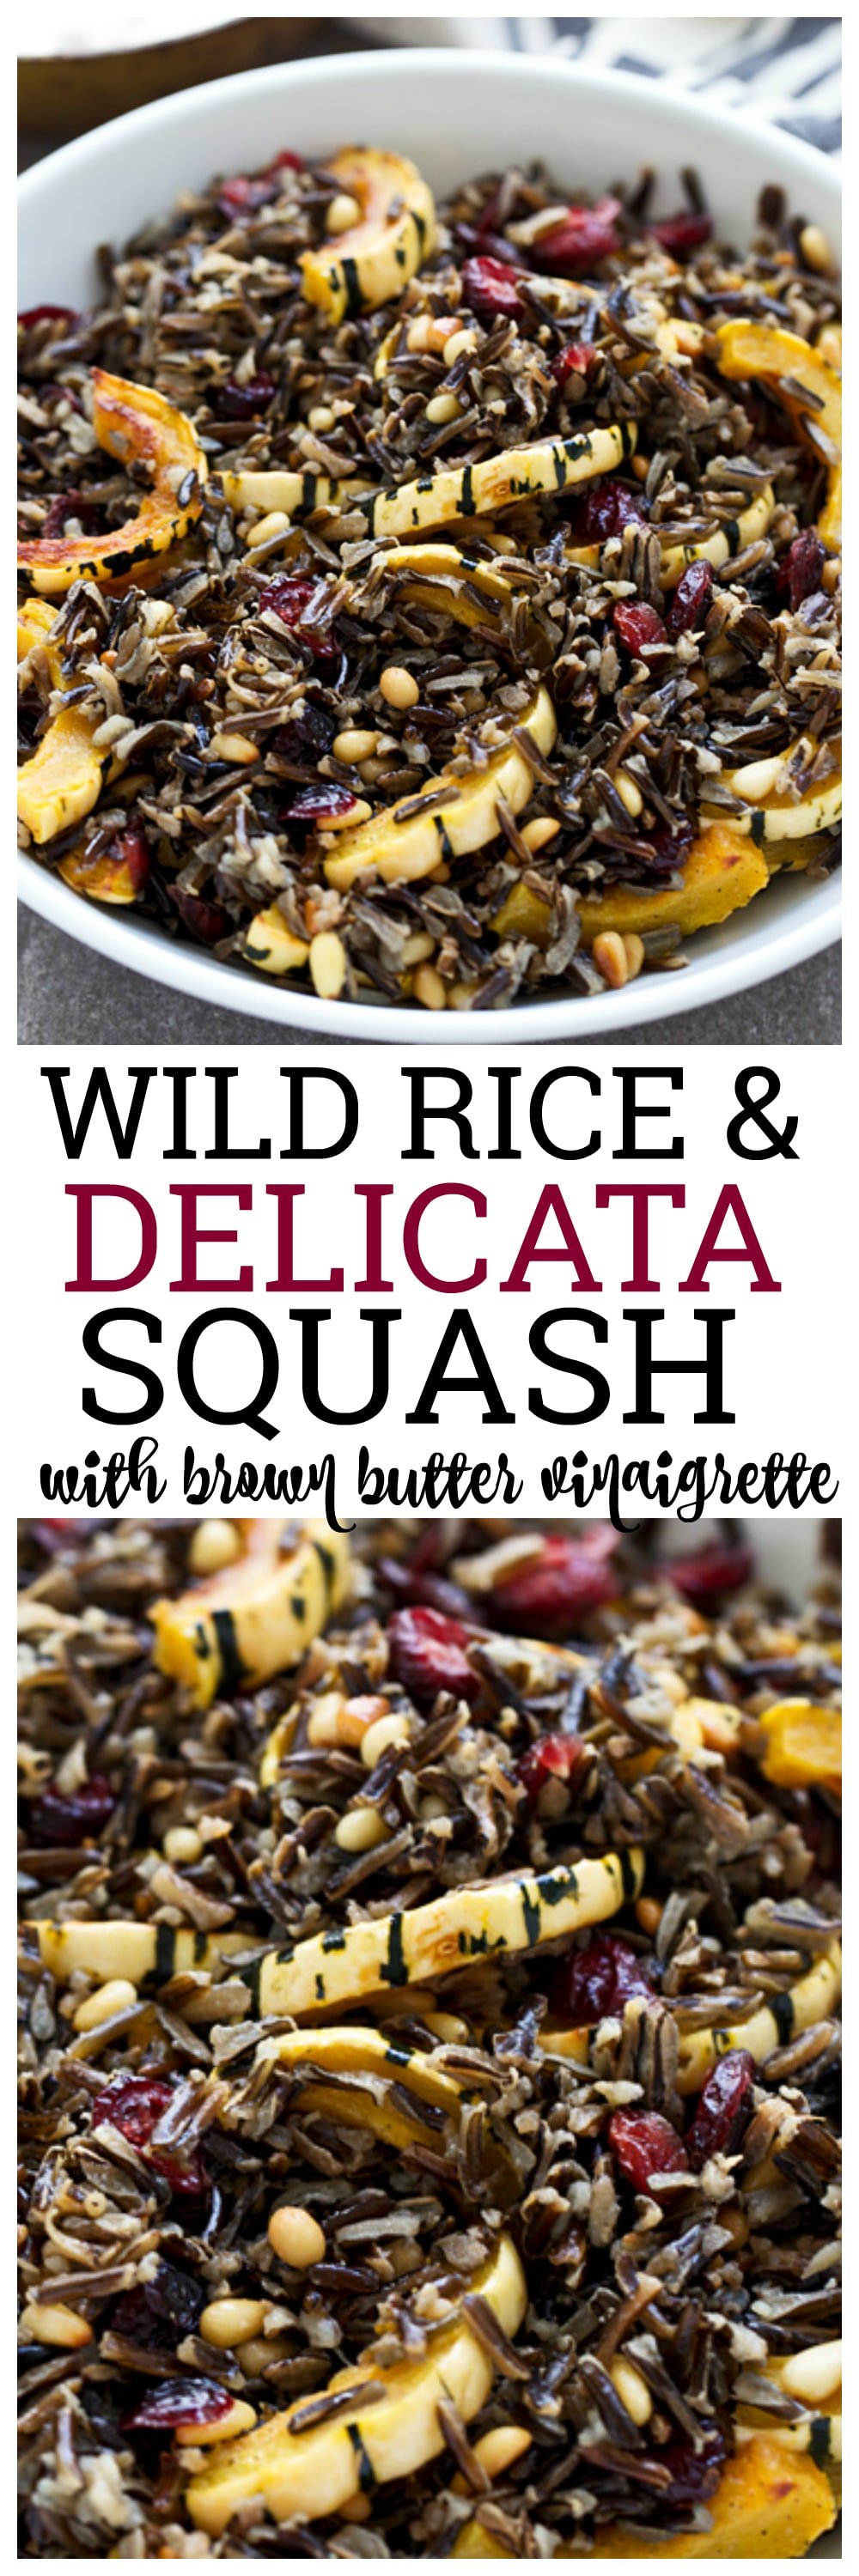 Wild Rice &amp; Delicata Squash with Brown Butter Vinaigrette